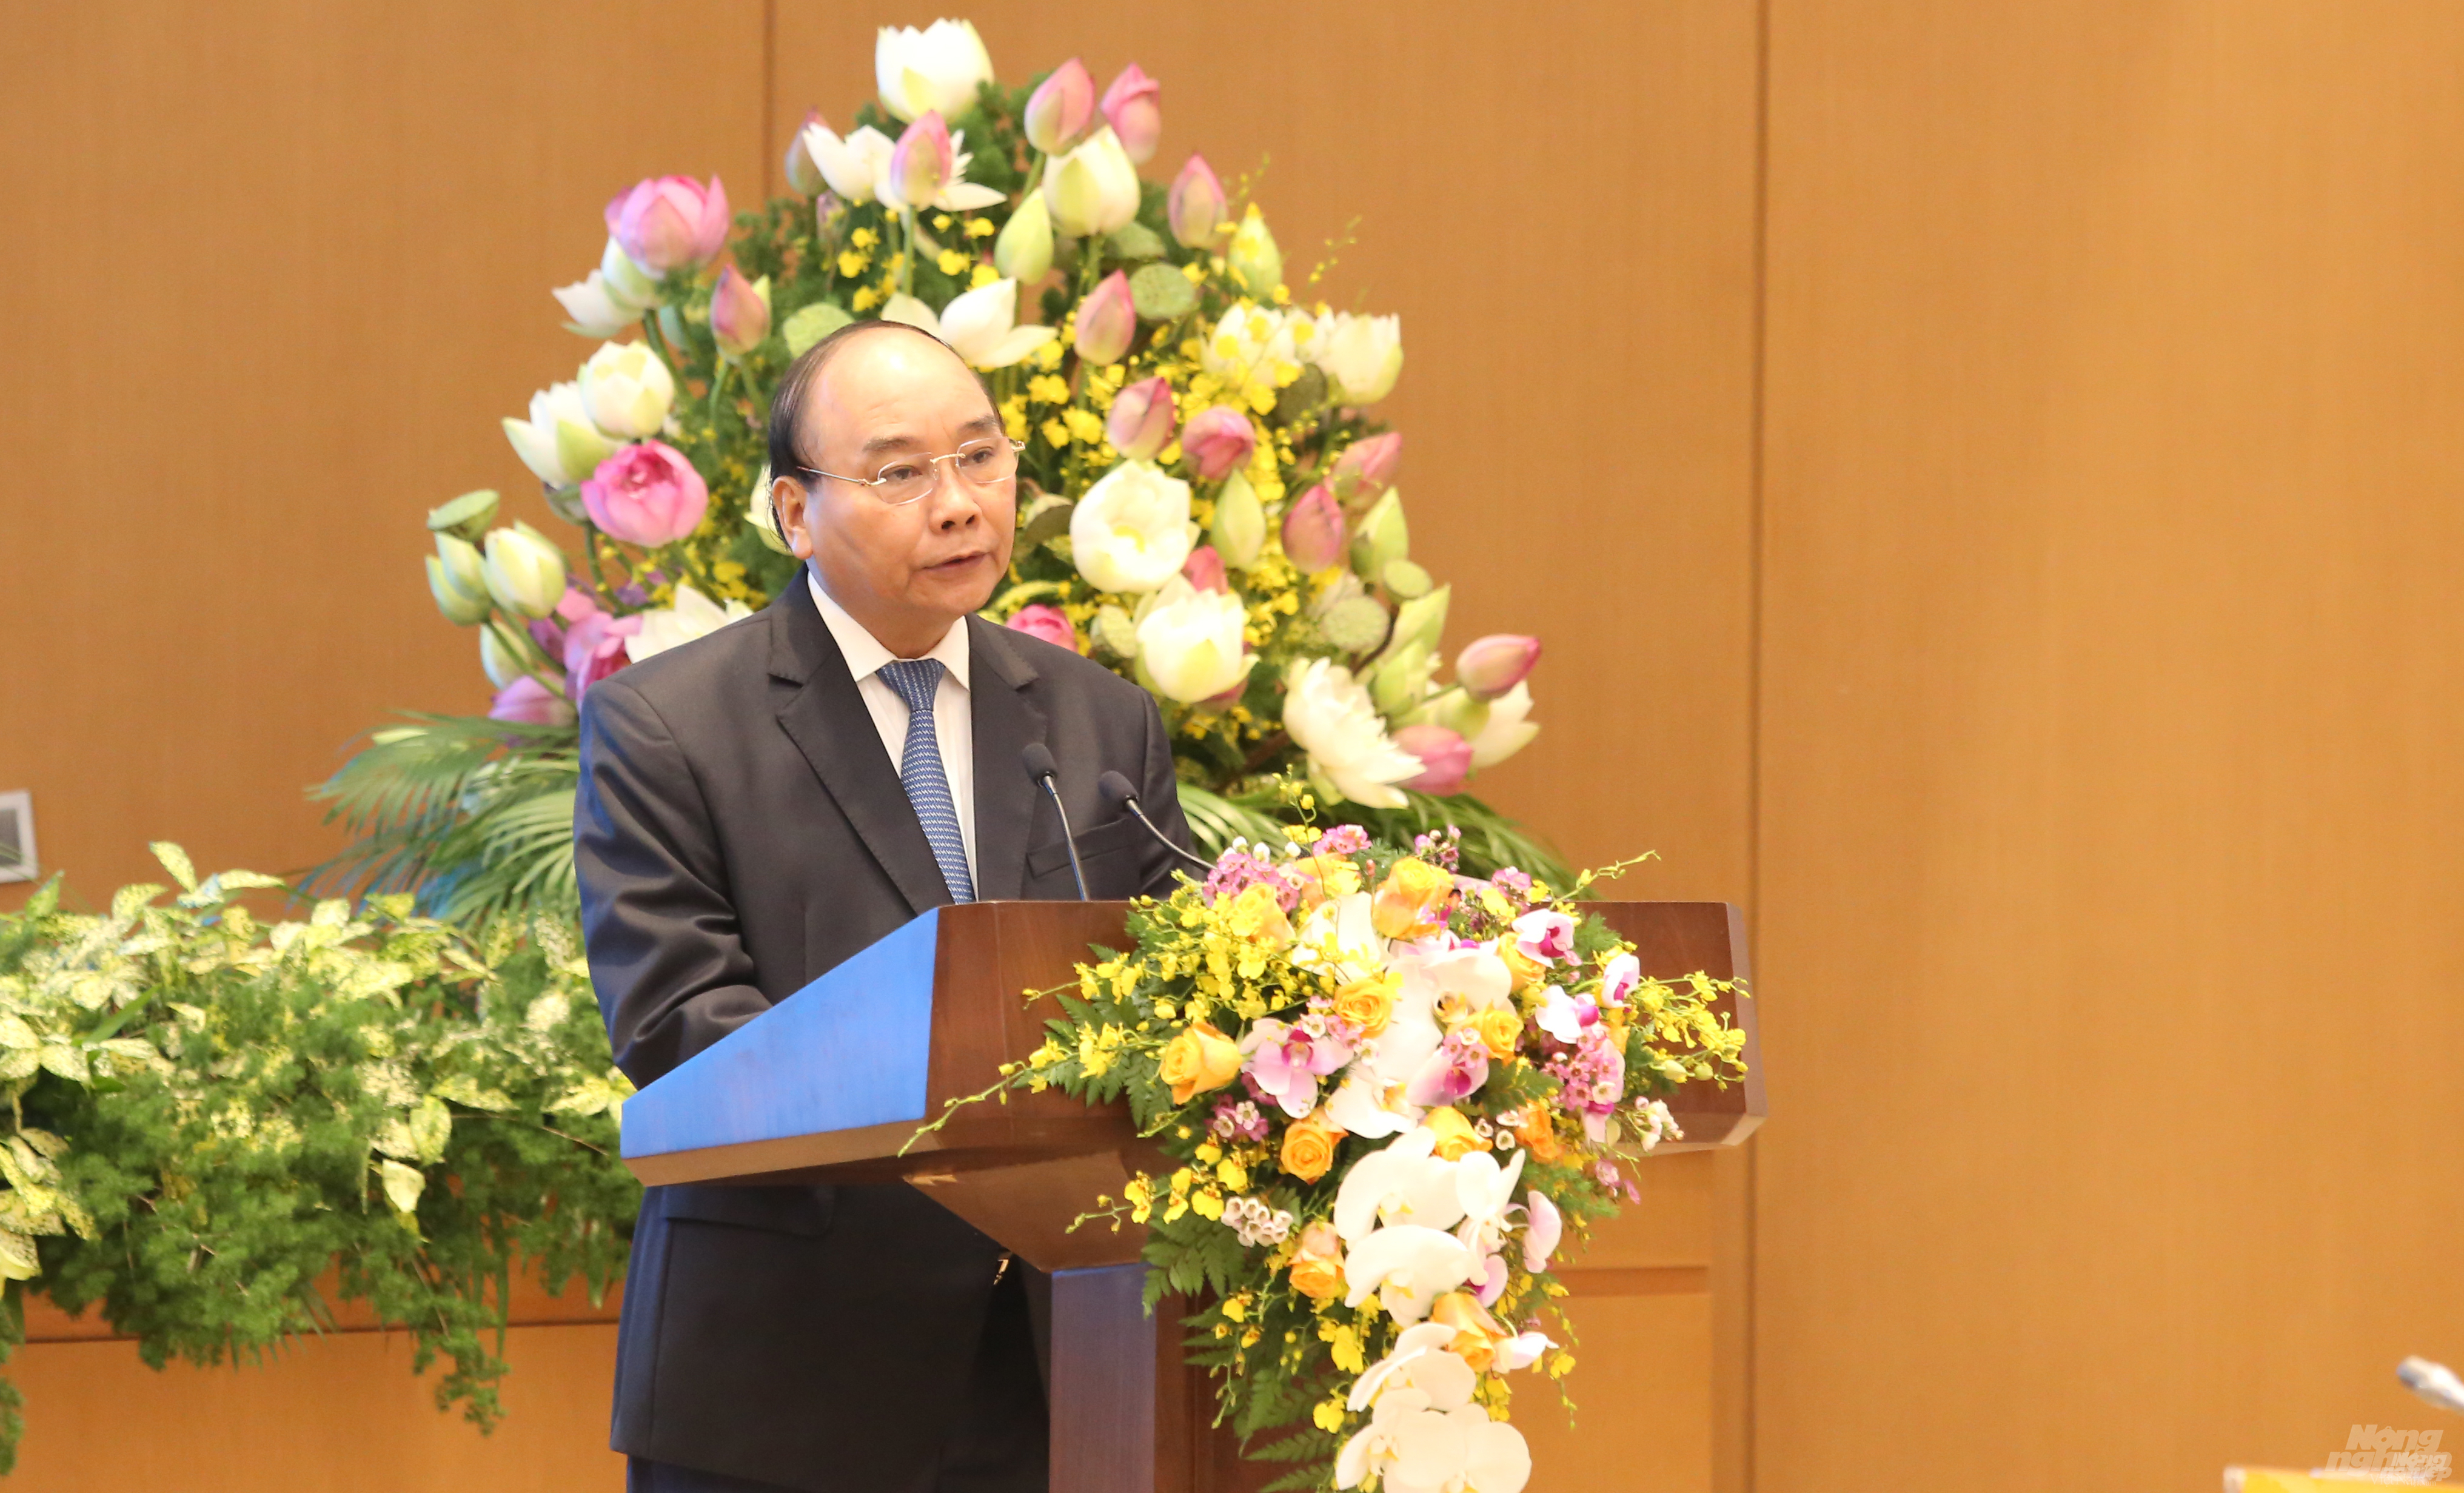 Thủ tướng Chính phủ Nguyễn Xuân Phúc chủ trì hội nghị trực tuyến triển khai kế hoạch thực thi hiệp định EVFTA. Ảnh: Minh Phúc.